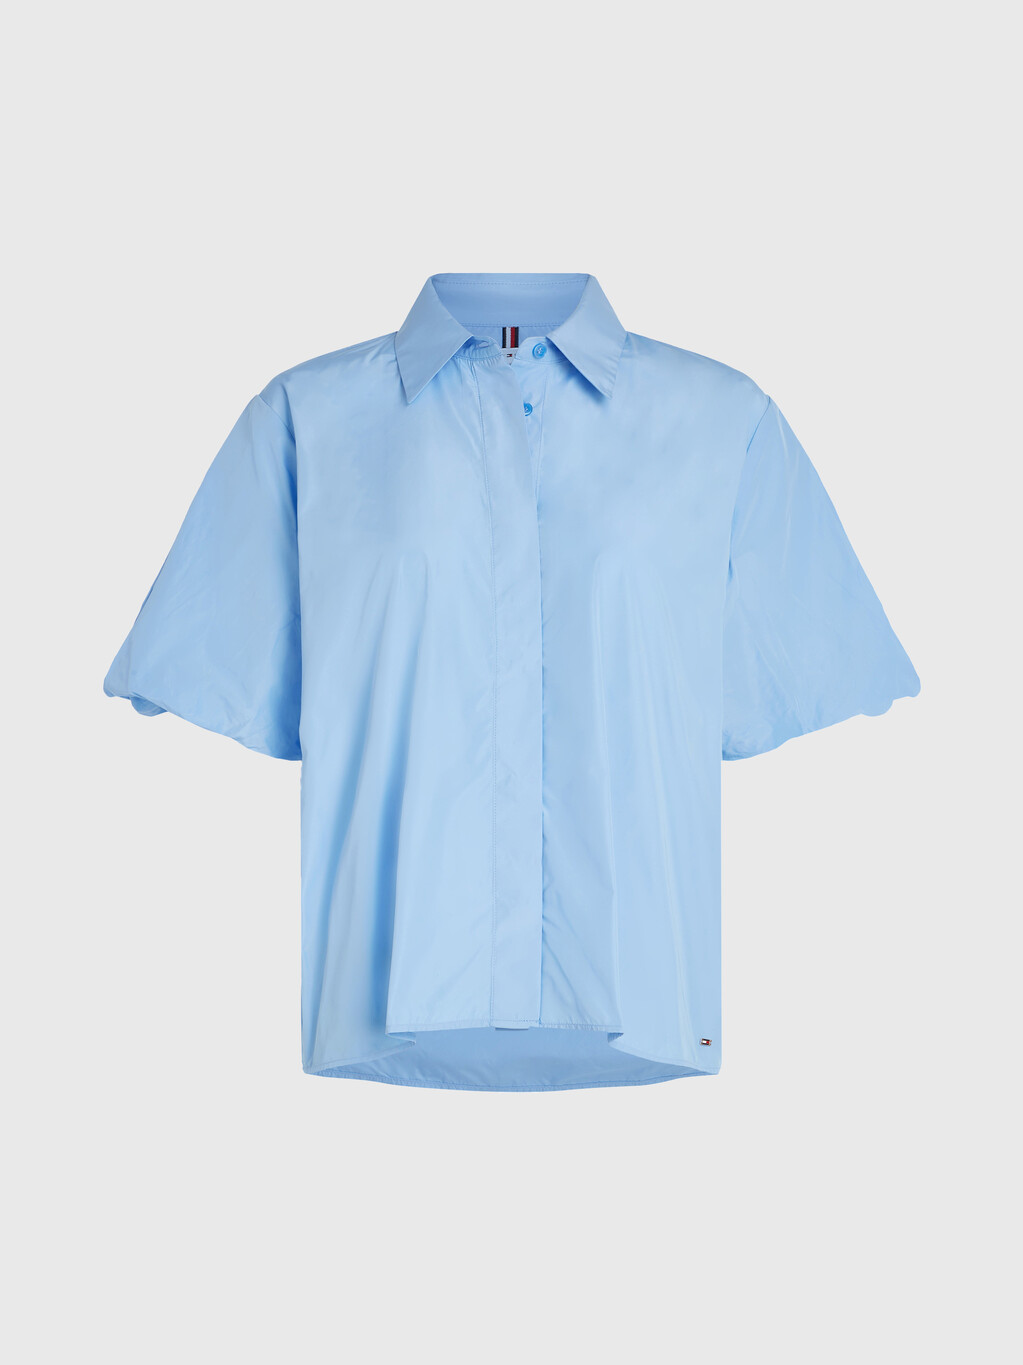 塔夫綢泡泡短袖寬鬆裇衫, Vessel Blue, hi-res